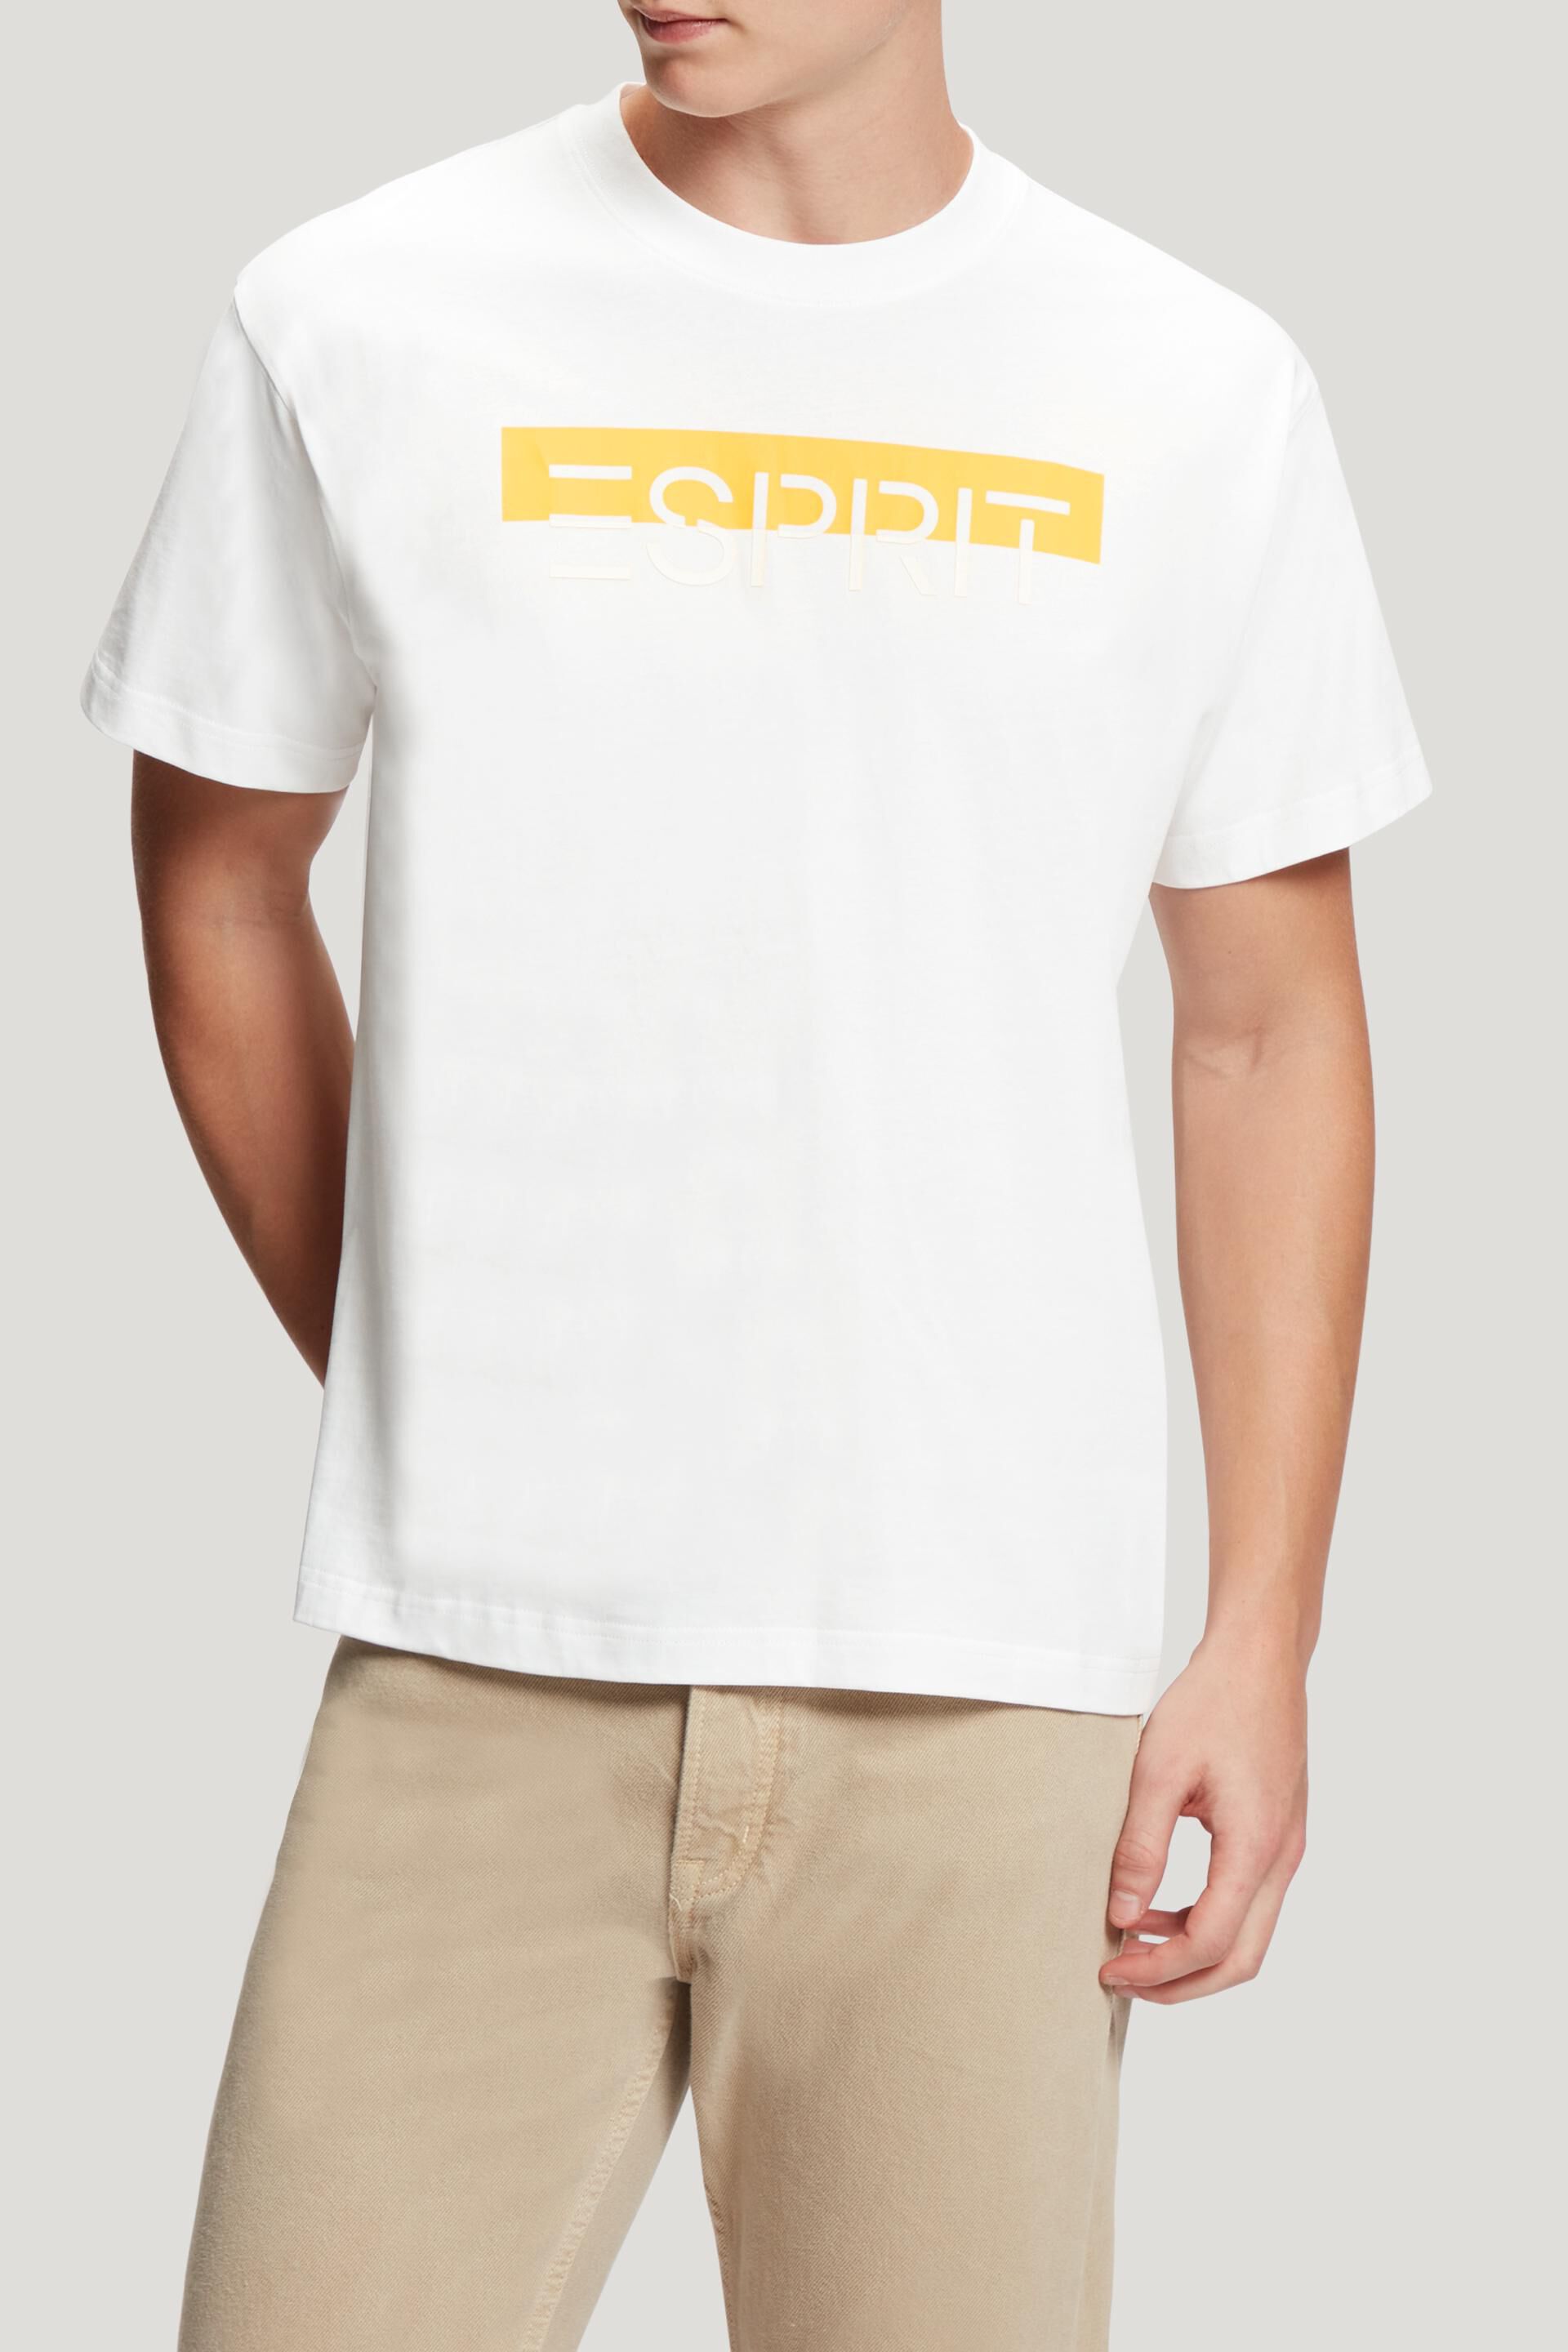 Esprit applique shine t-shirt logo Matte